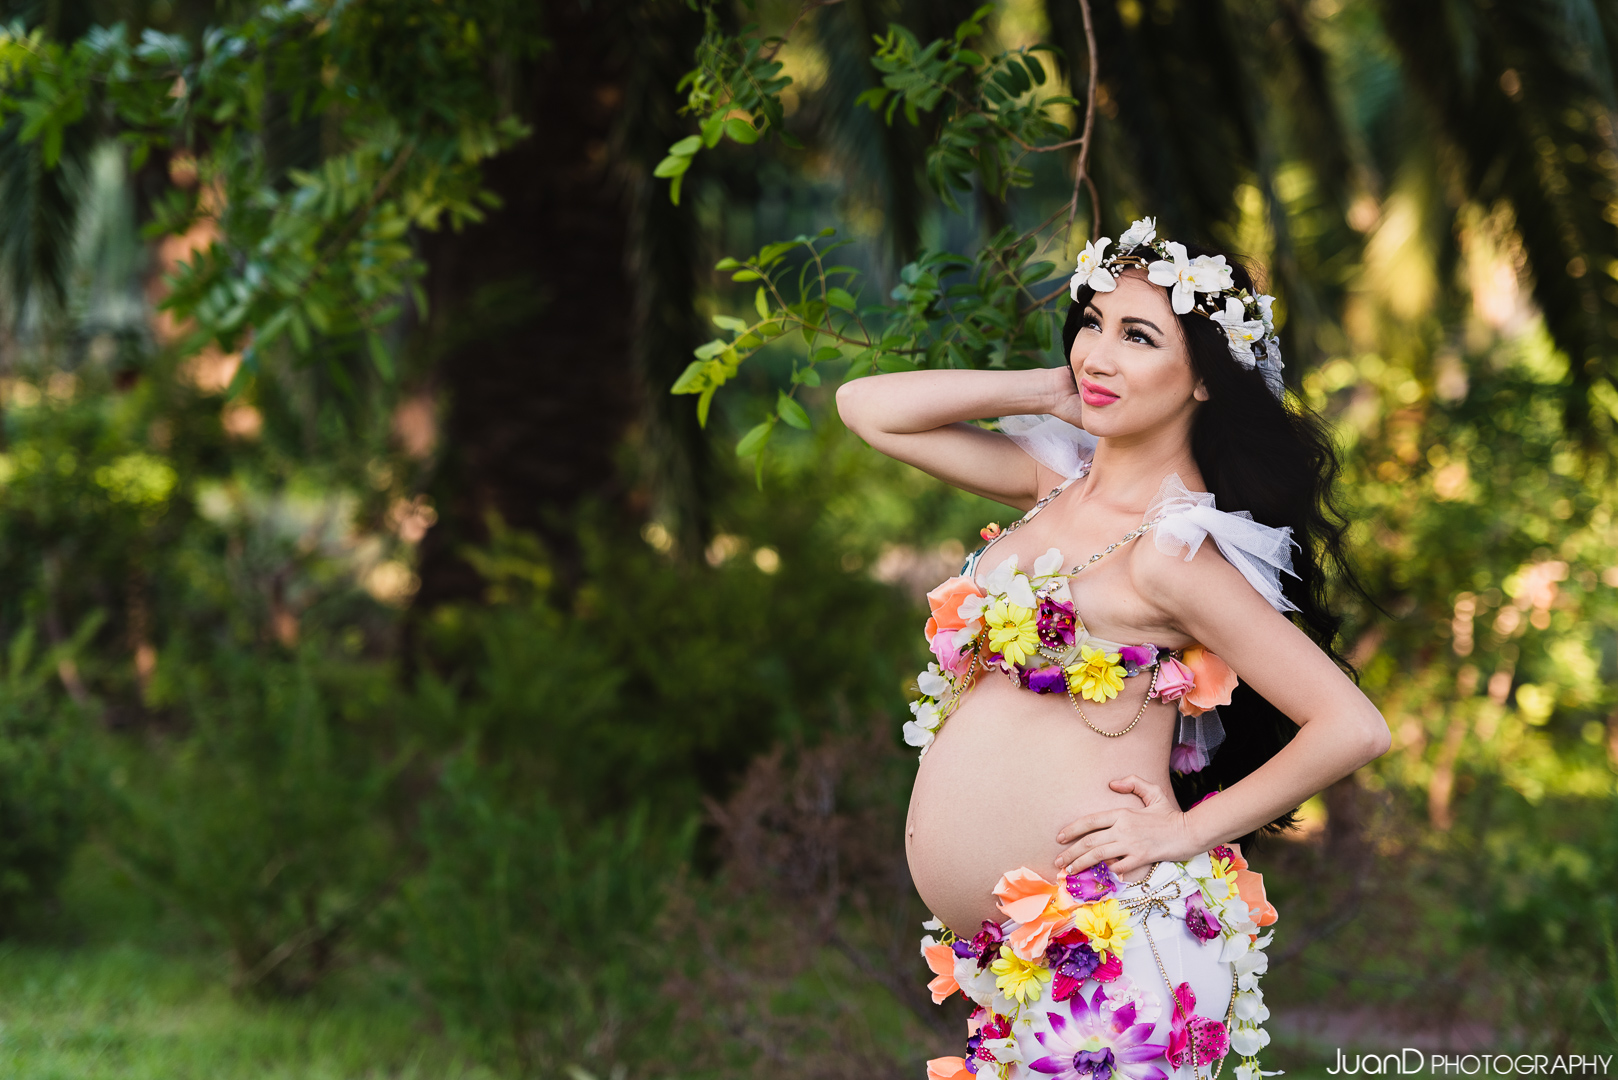 La danza del vientre durante el embarazo: Beneficios y